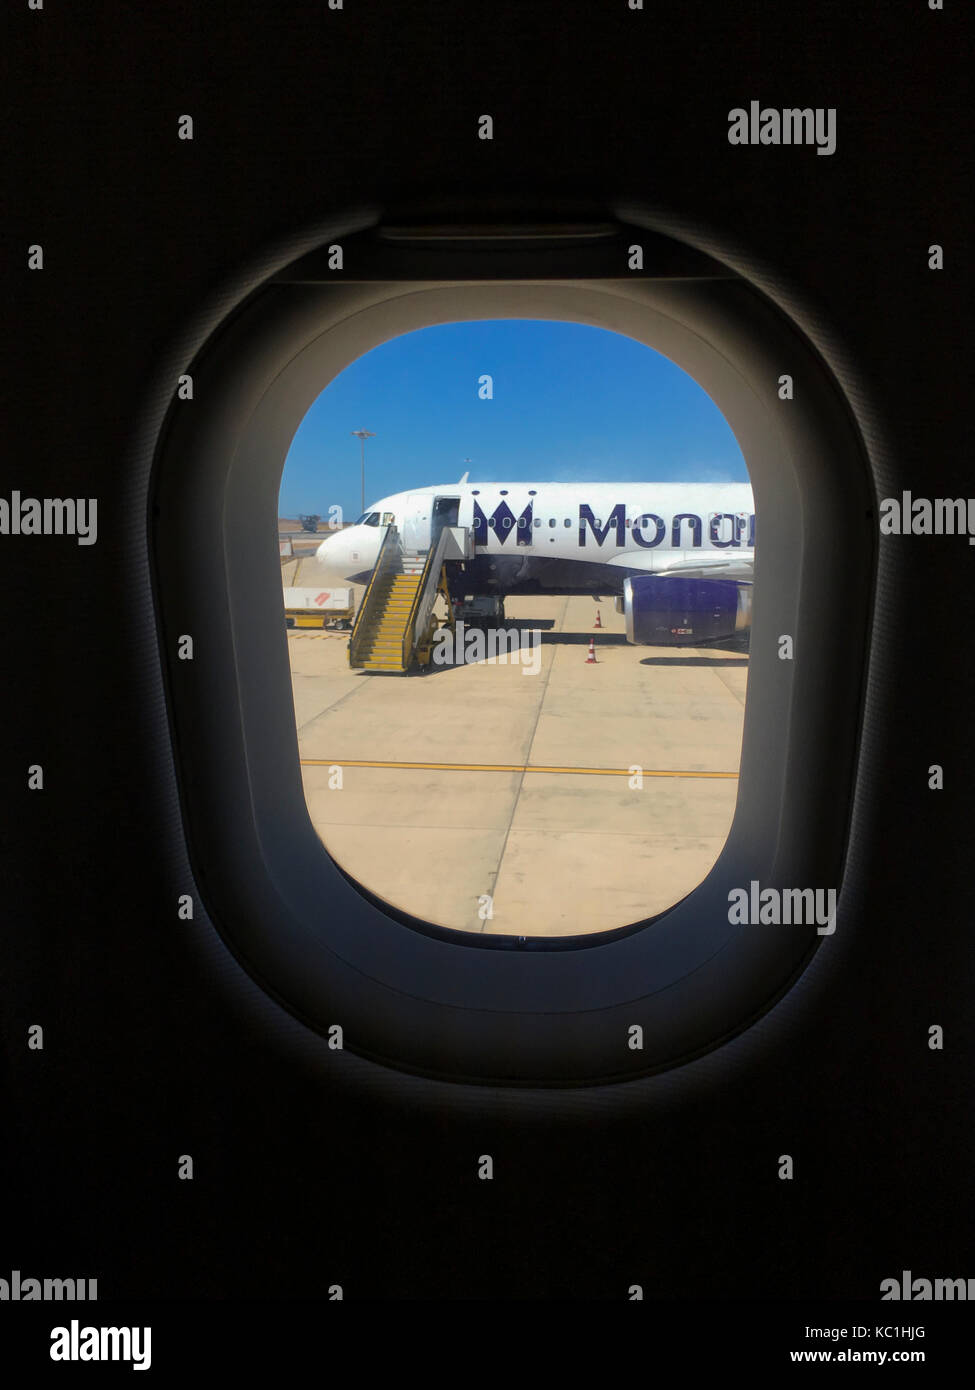 Un monarque déserte avion se trouve sur le tarmac de l'aéroport de Faro, Portugal. Vu à travers la fenêtre d'un avion voisin Banque D'Images